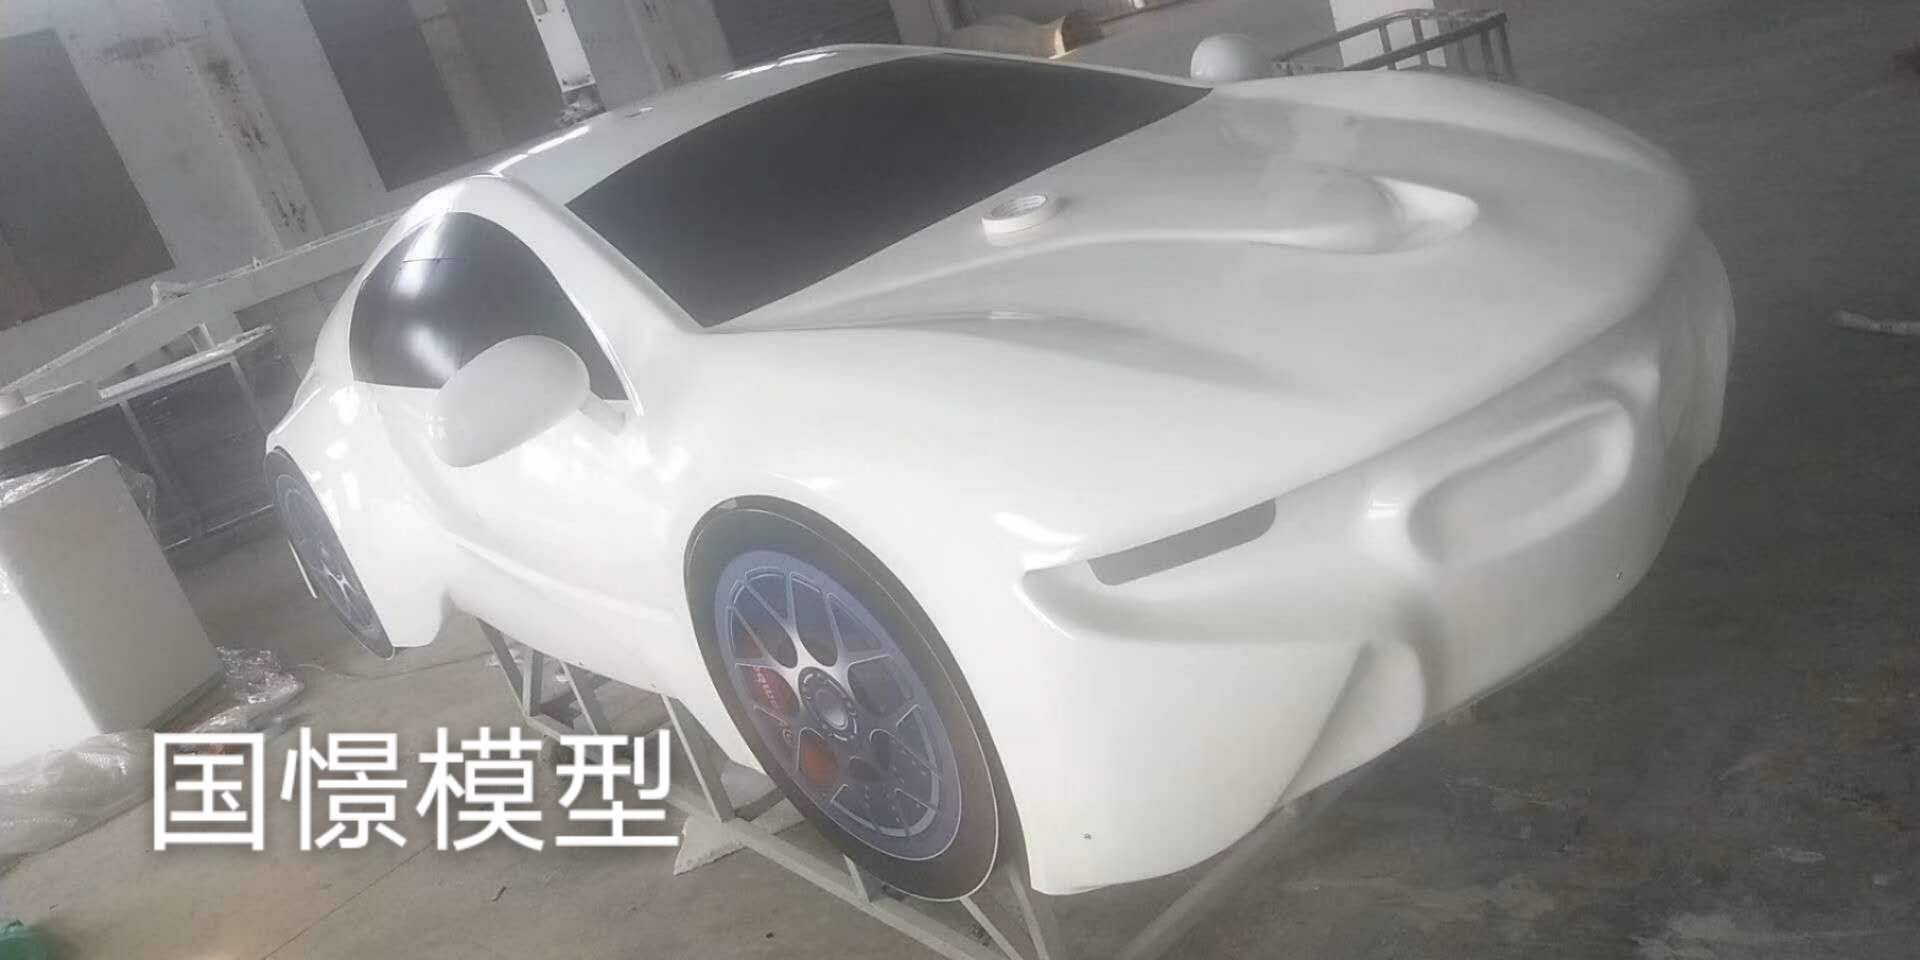 凤凰县车辆模型